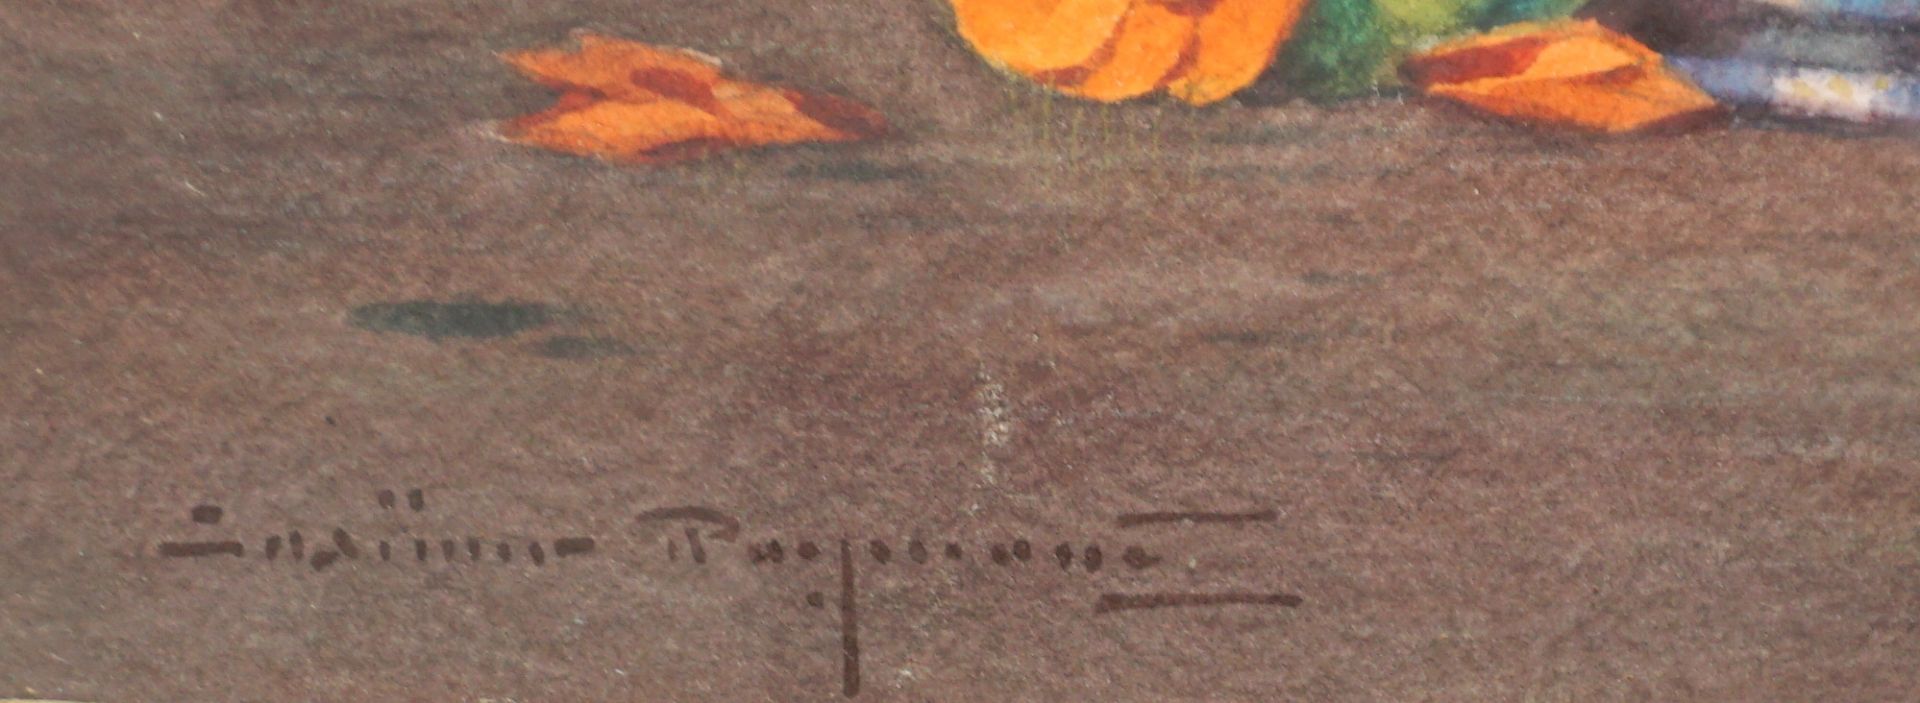 undeutlich signiert, "Stillleben mit orangefarbenen Zinnien", um 1900, Aquarell - Bild 3 aus 4